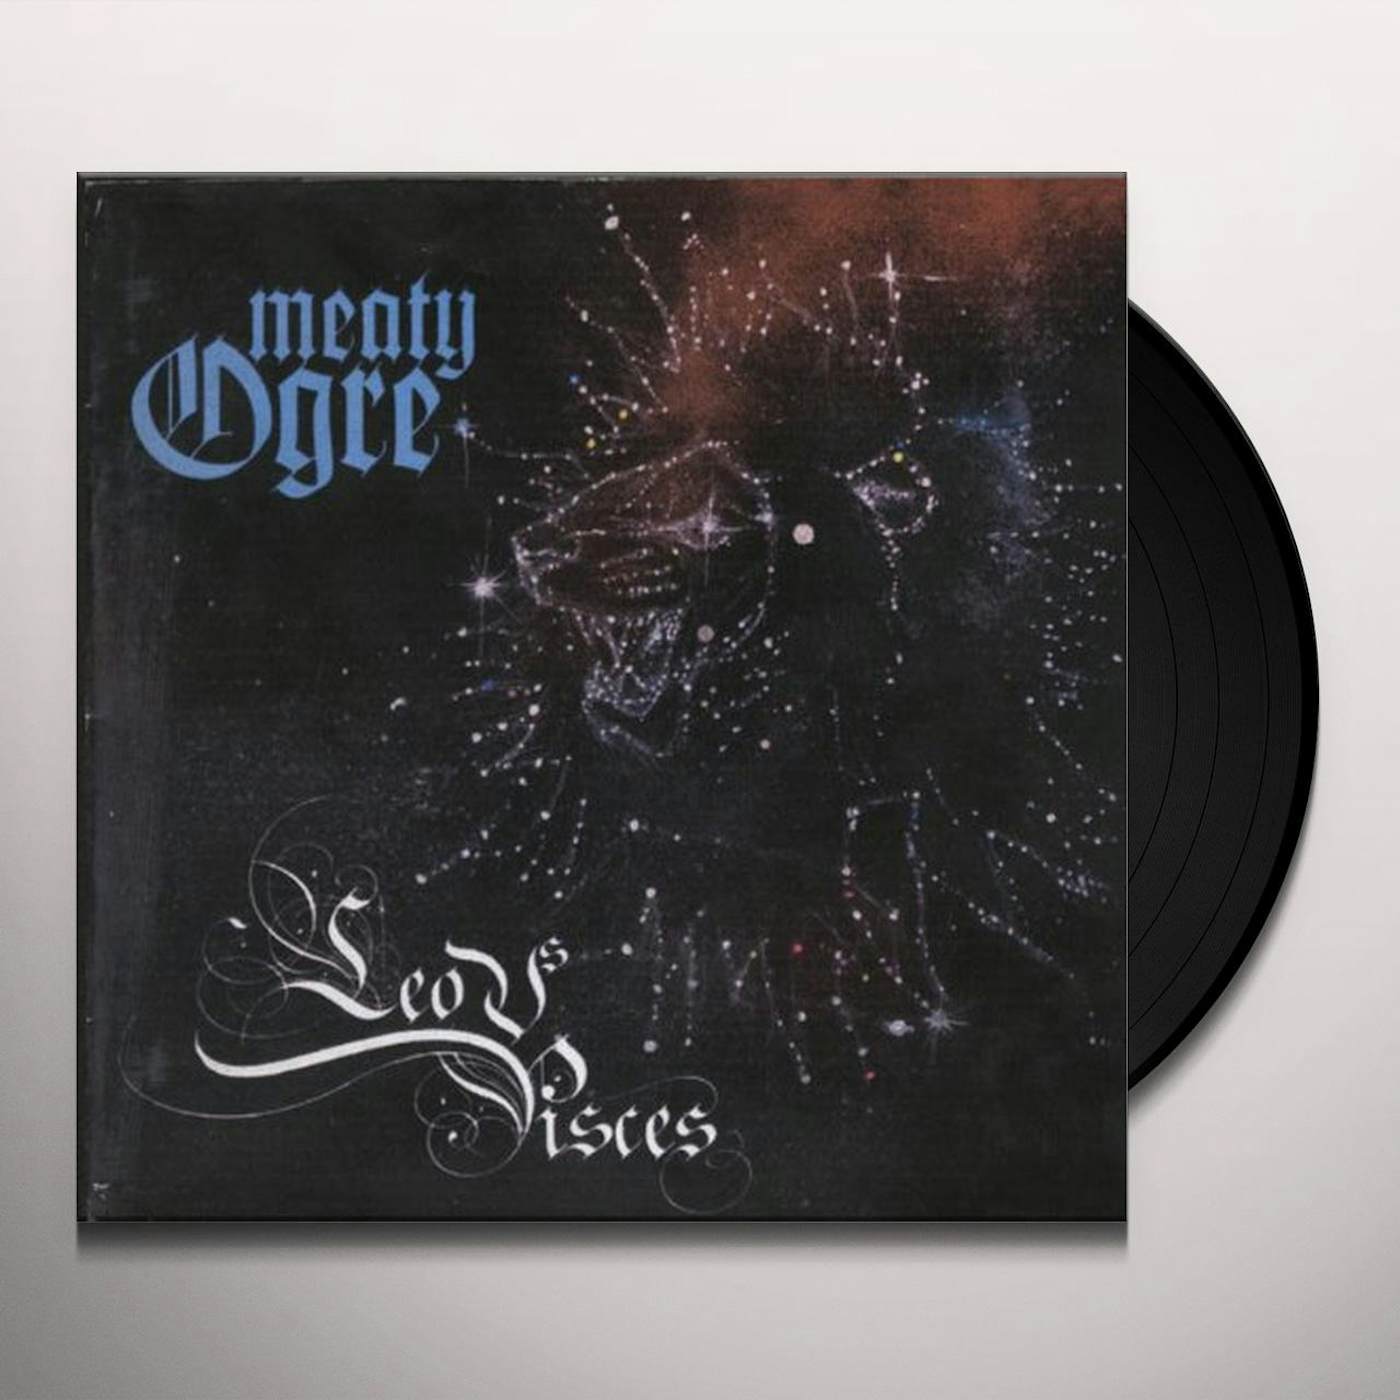 Meaty Ogre LEO VS PISCES 1 Vinyl Record